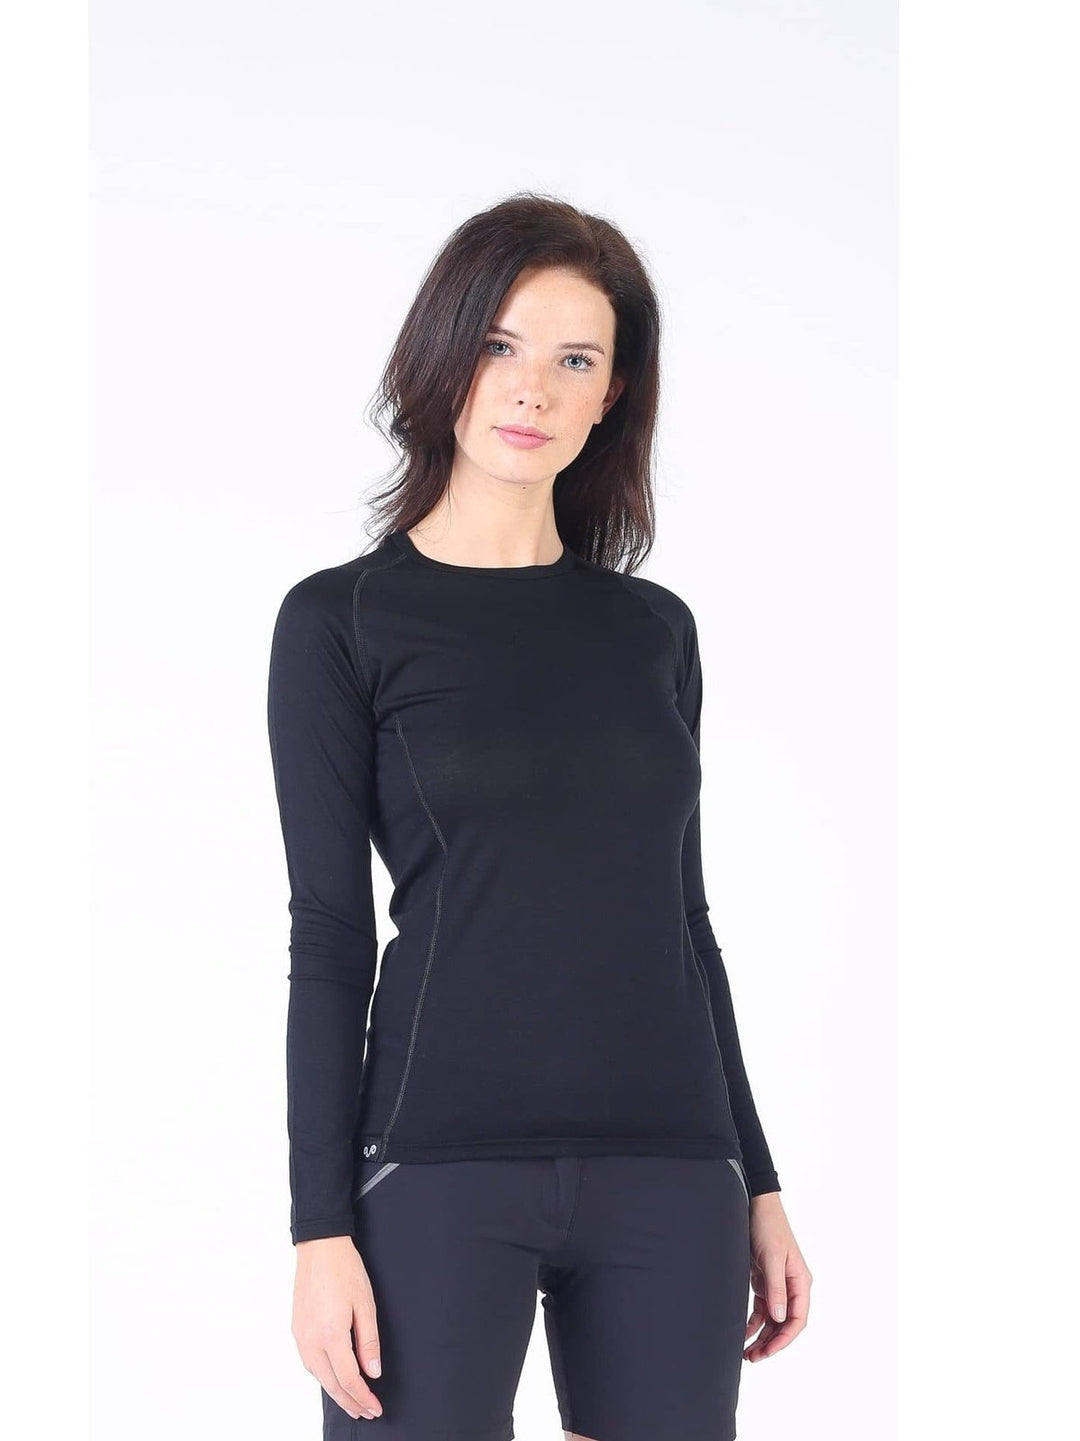 KONA- Aktivni veš ženska bluza dugi rukav 100% merino vuna